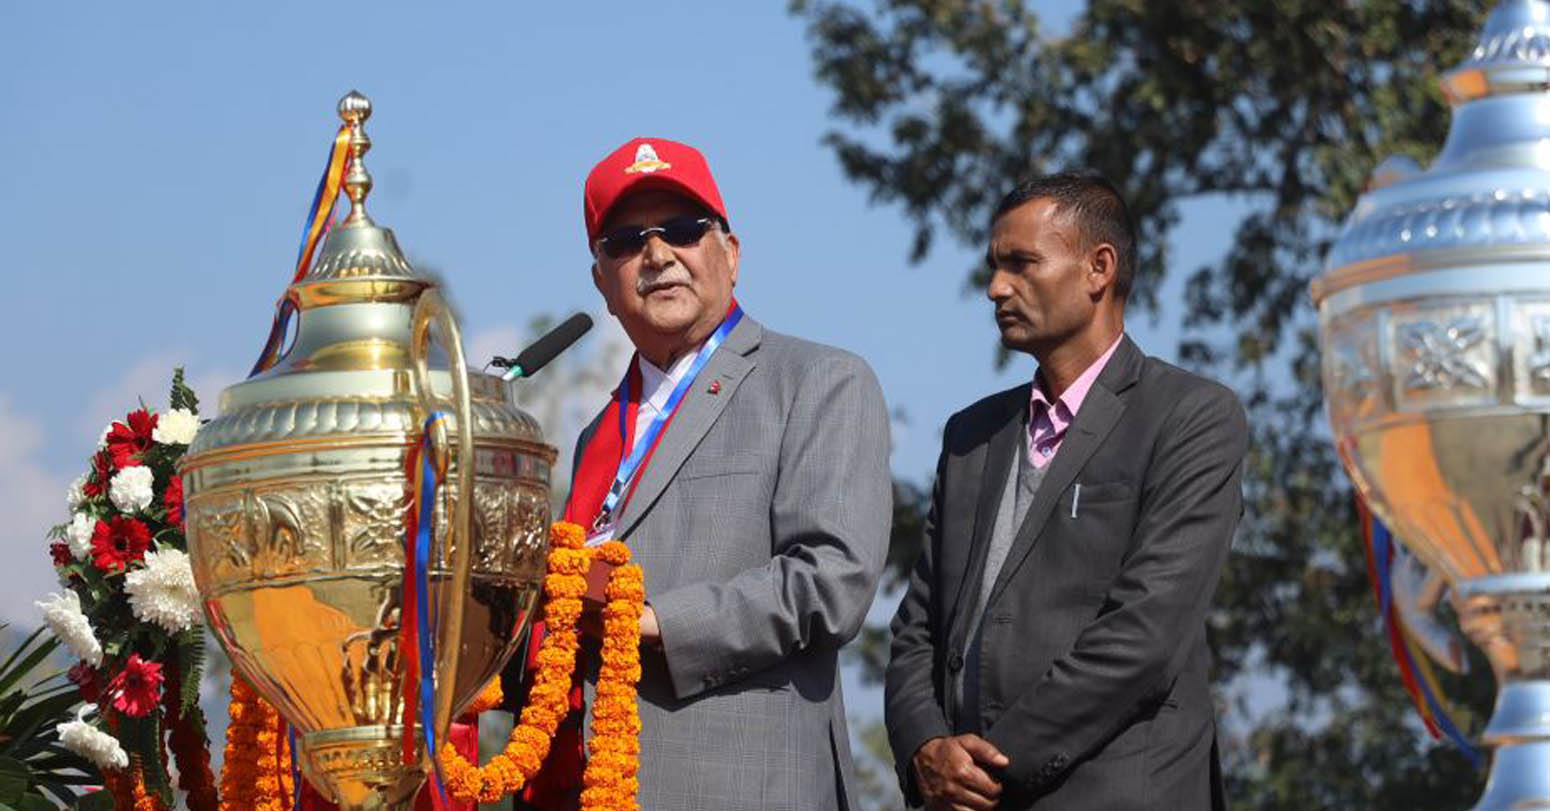 केपी ओली कप क्रिकेटको उद्घाटन गर्दै अध्यक्ष ओली : स्तरीय क्रिकेट मैदानहरुको निर्माण गर्नुपर्छ (तस्वीरसहित)